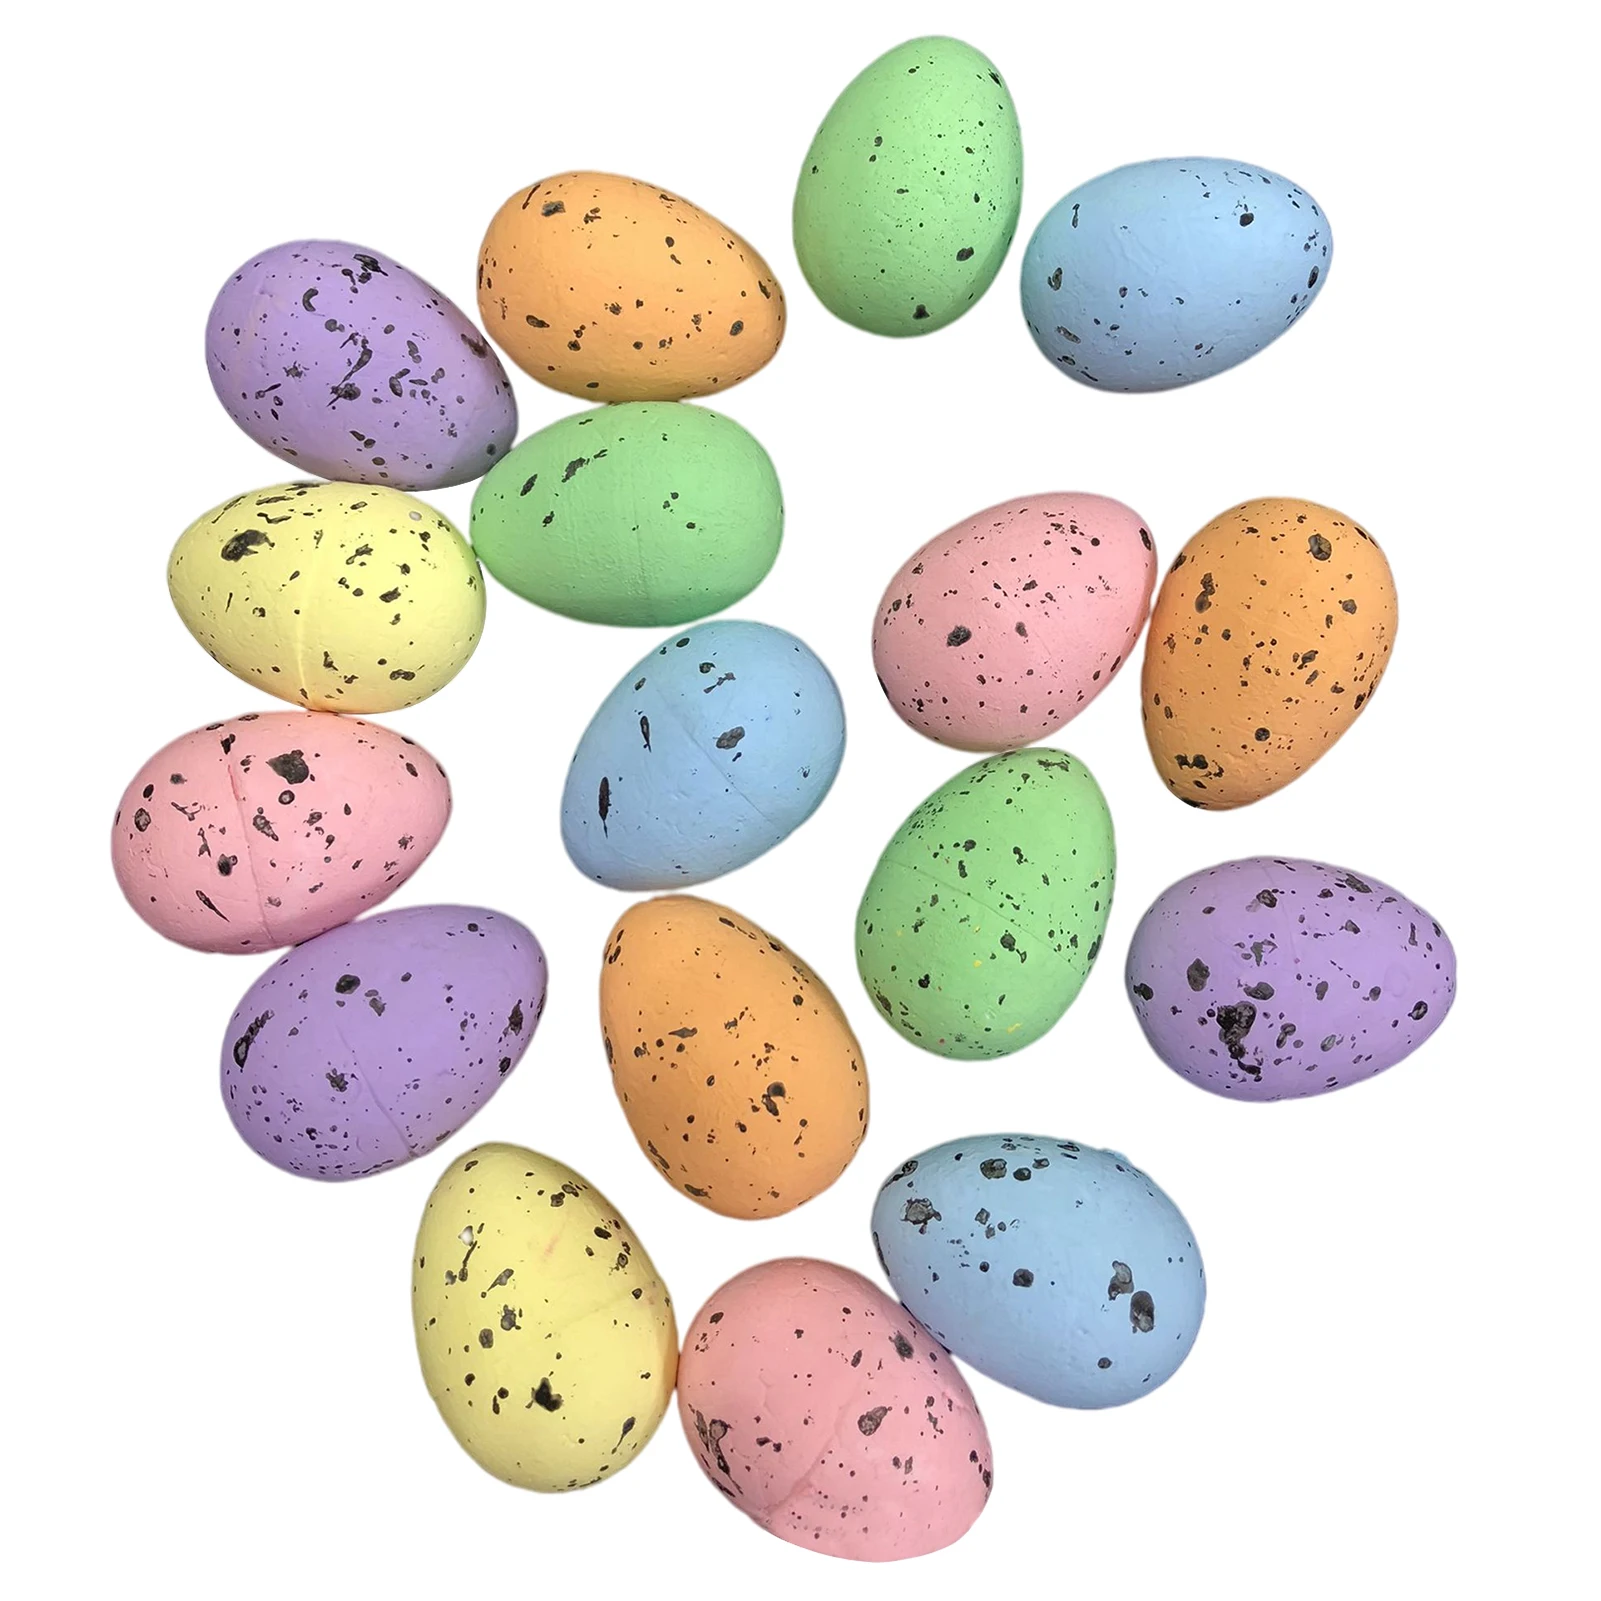 

Пена для пасхальных яиц, разноцветная пена для яиц, имитация яиц ручной работы, пена отлично подходит для творчества, украшения на праздник